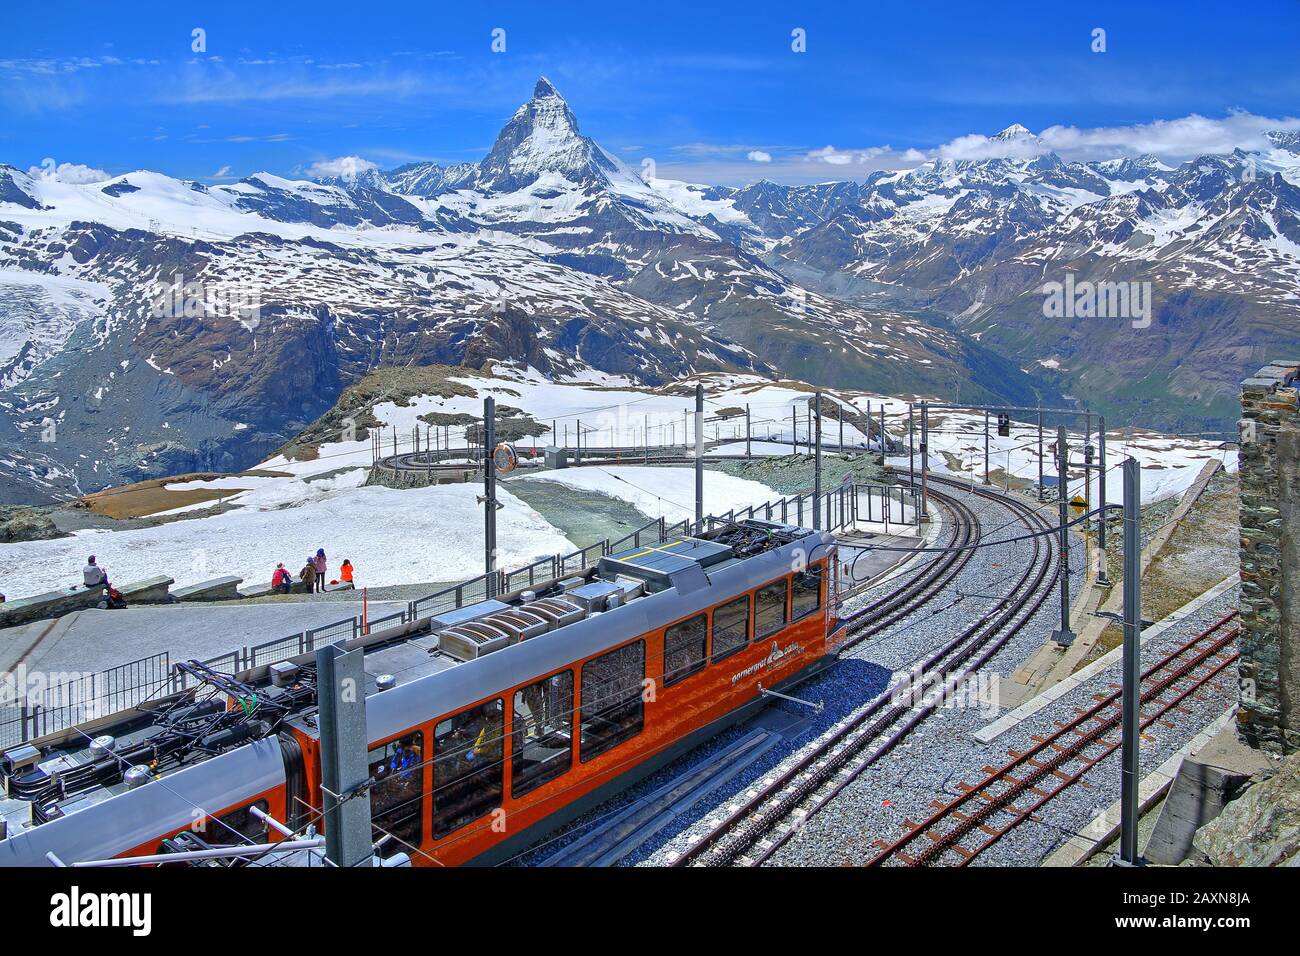 Summit station Gornergrat 3089 m of the rack railway in front of Matterhorn 4478 m, Zermatt, Matter valley, Valais, Switzerland Stock Photo